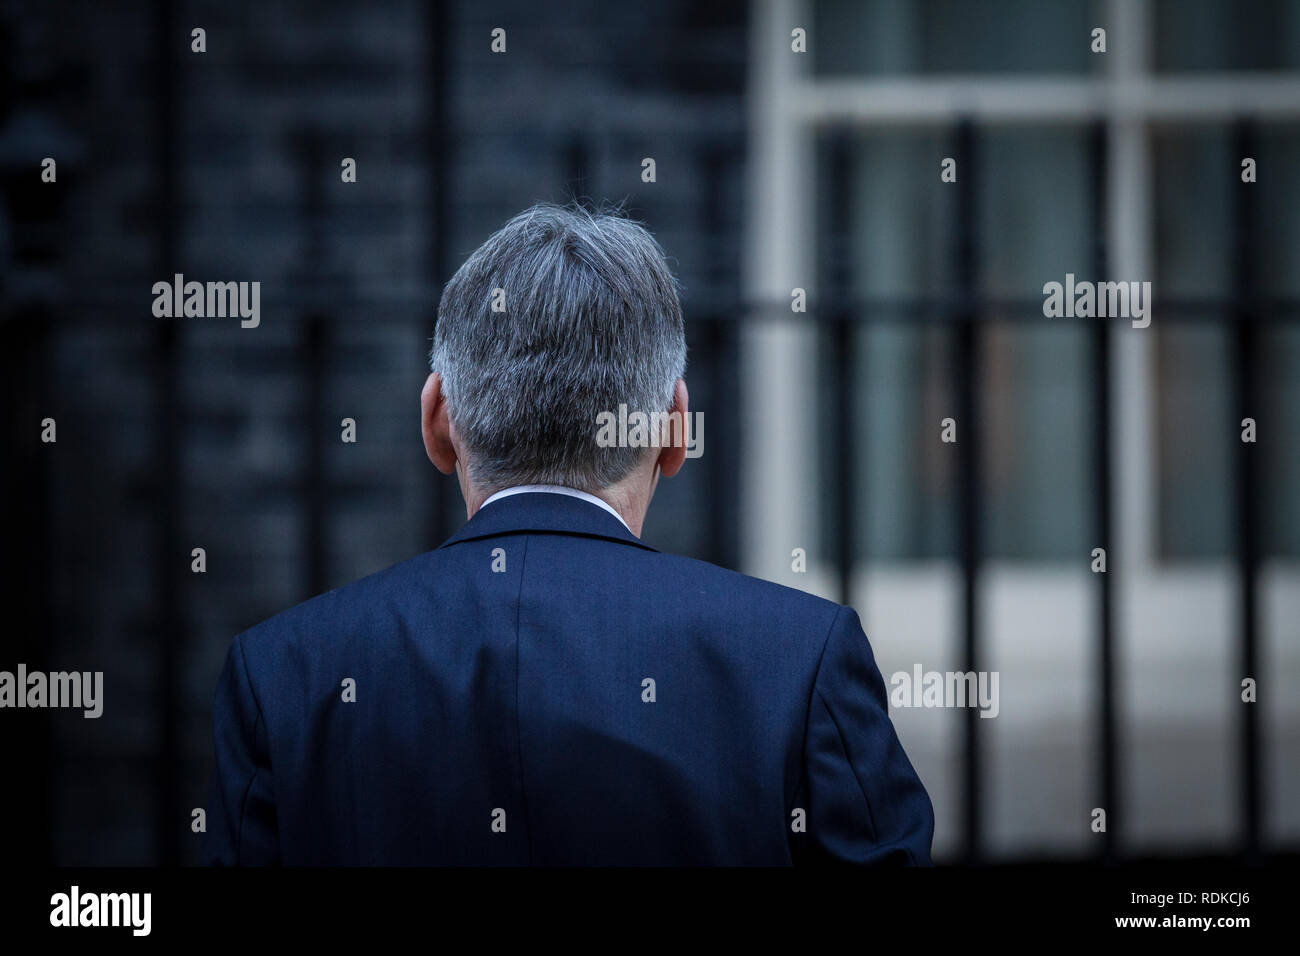 Philip Hammond, außerhalb Nr. 10 Downing Street während des Brexit Turbulenzen innerhalb der konservativen Regierung während der Verhandlungen, London, England, Großbritannien Stockfoto